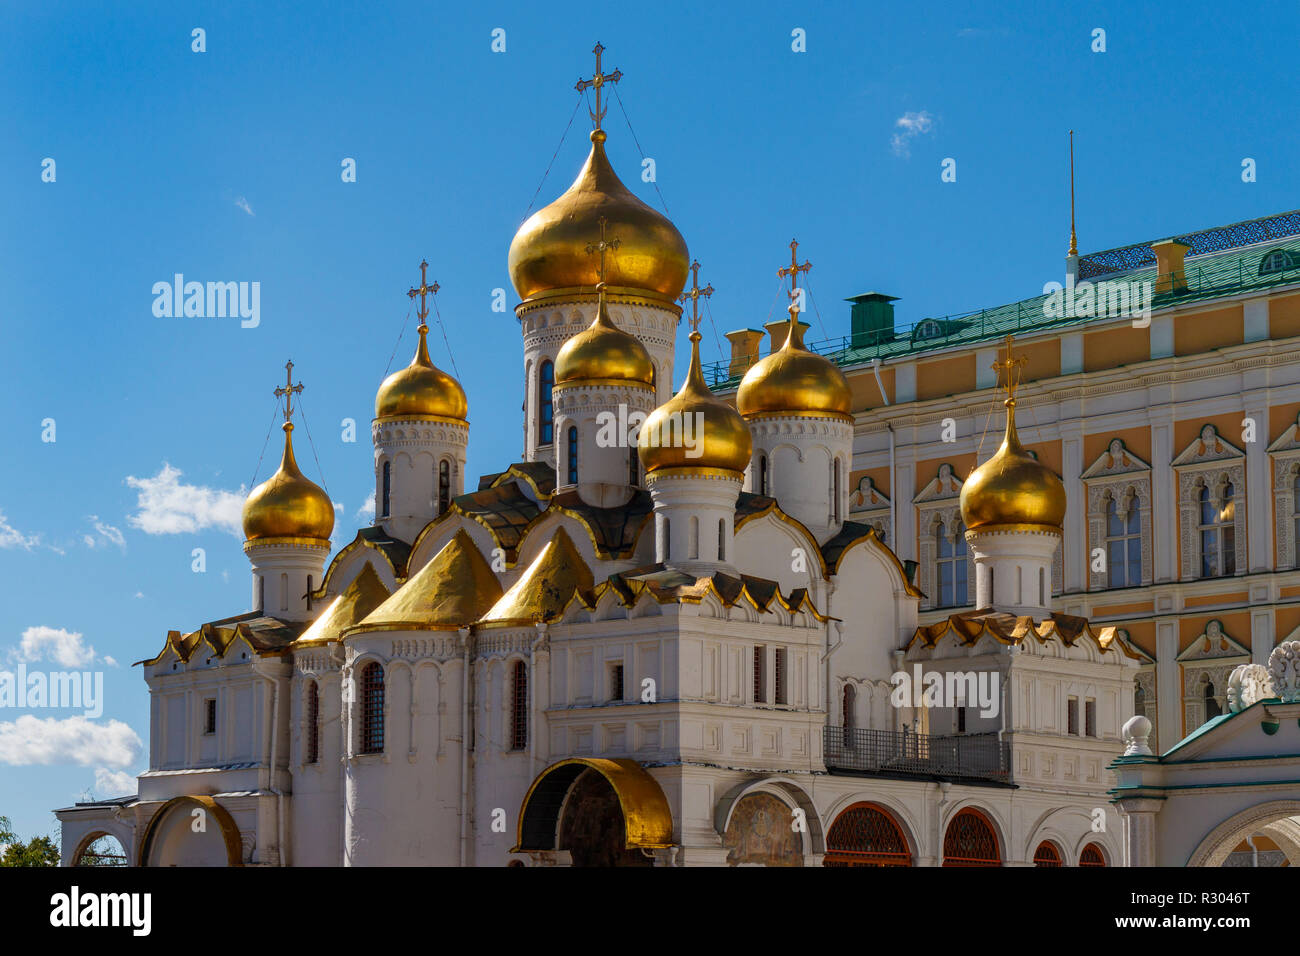 1489 Cathédrale de l'Annonciation, Place de la Cathédrale, Kremlin, Moscou, Russie. Dédié à l'Annonciation de la Vierge Marie. Banque D'Images